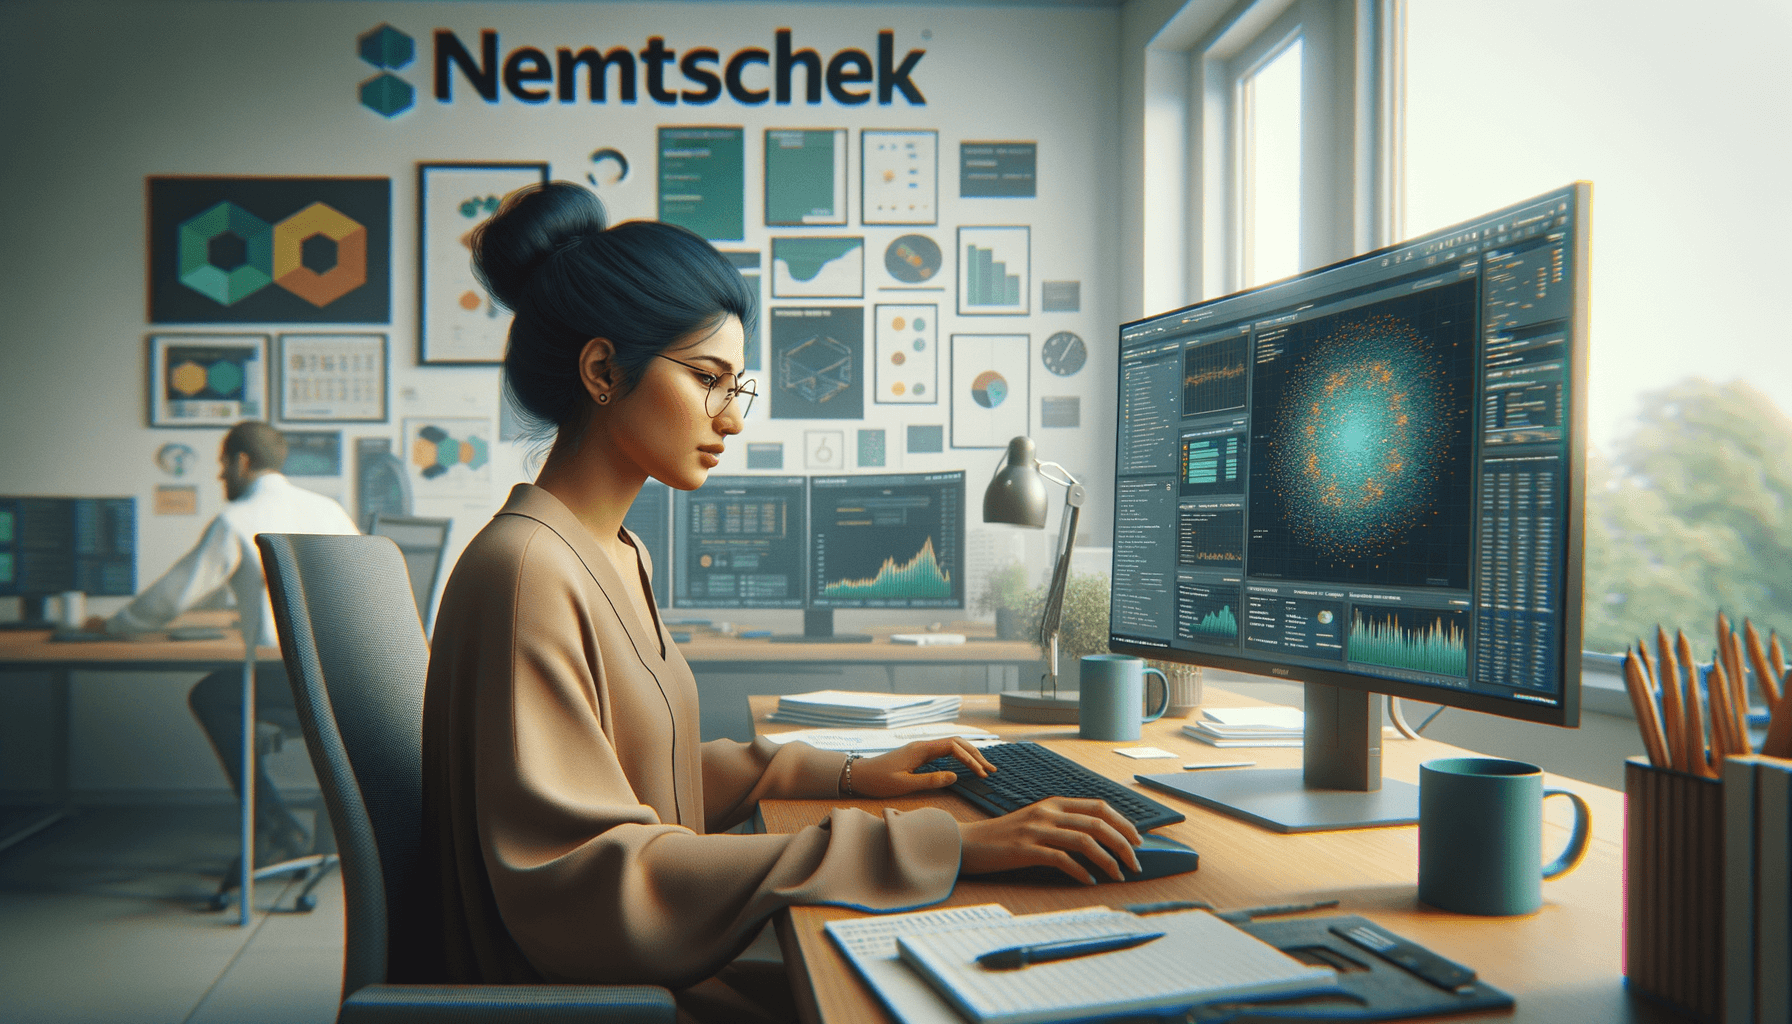 Nemetschek Data Scientist